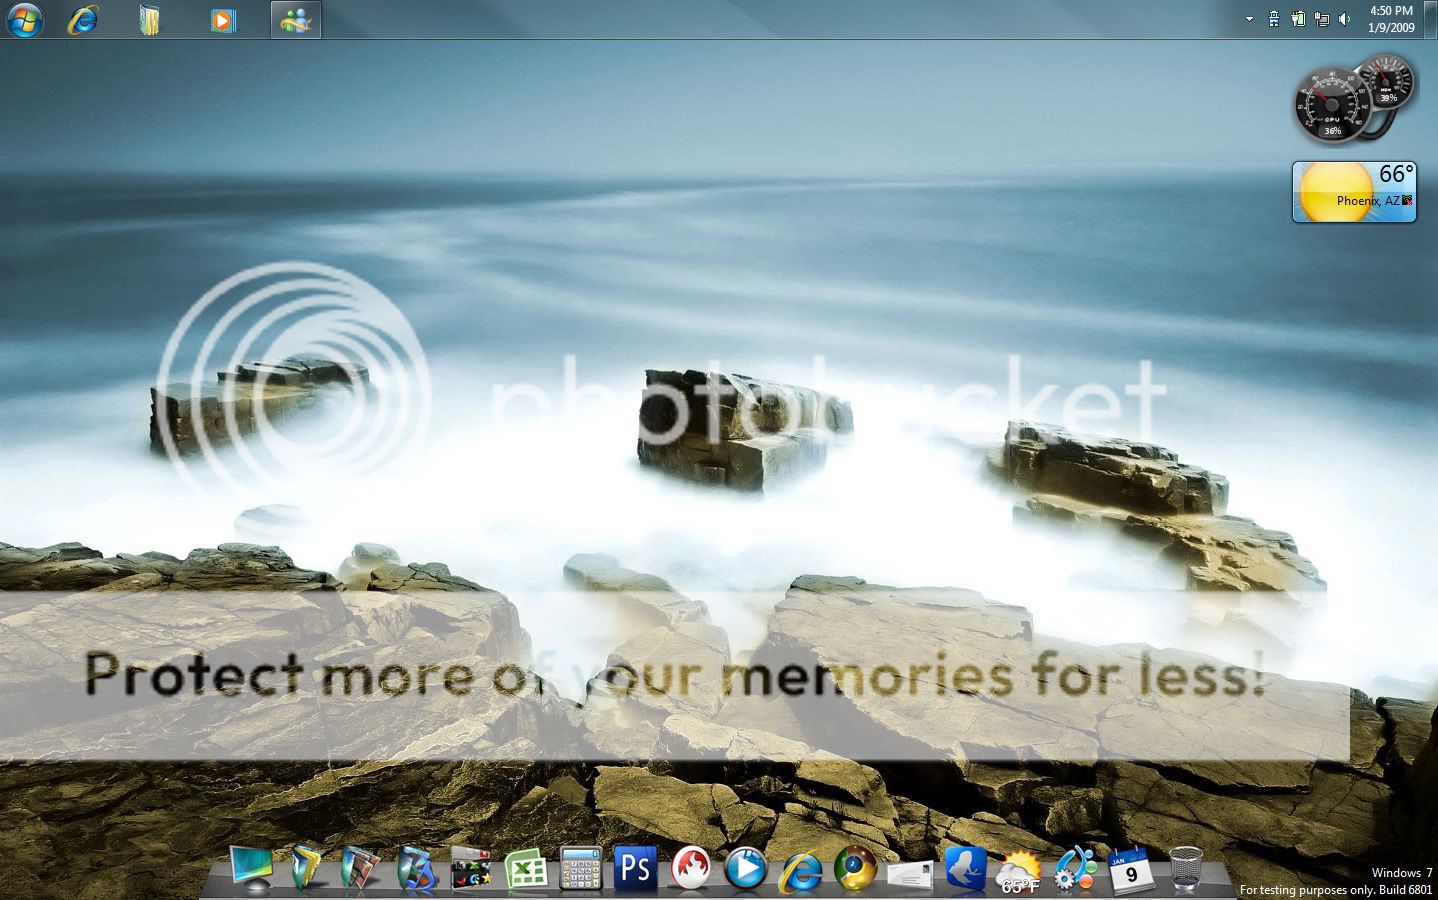 desktop2.jpg